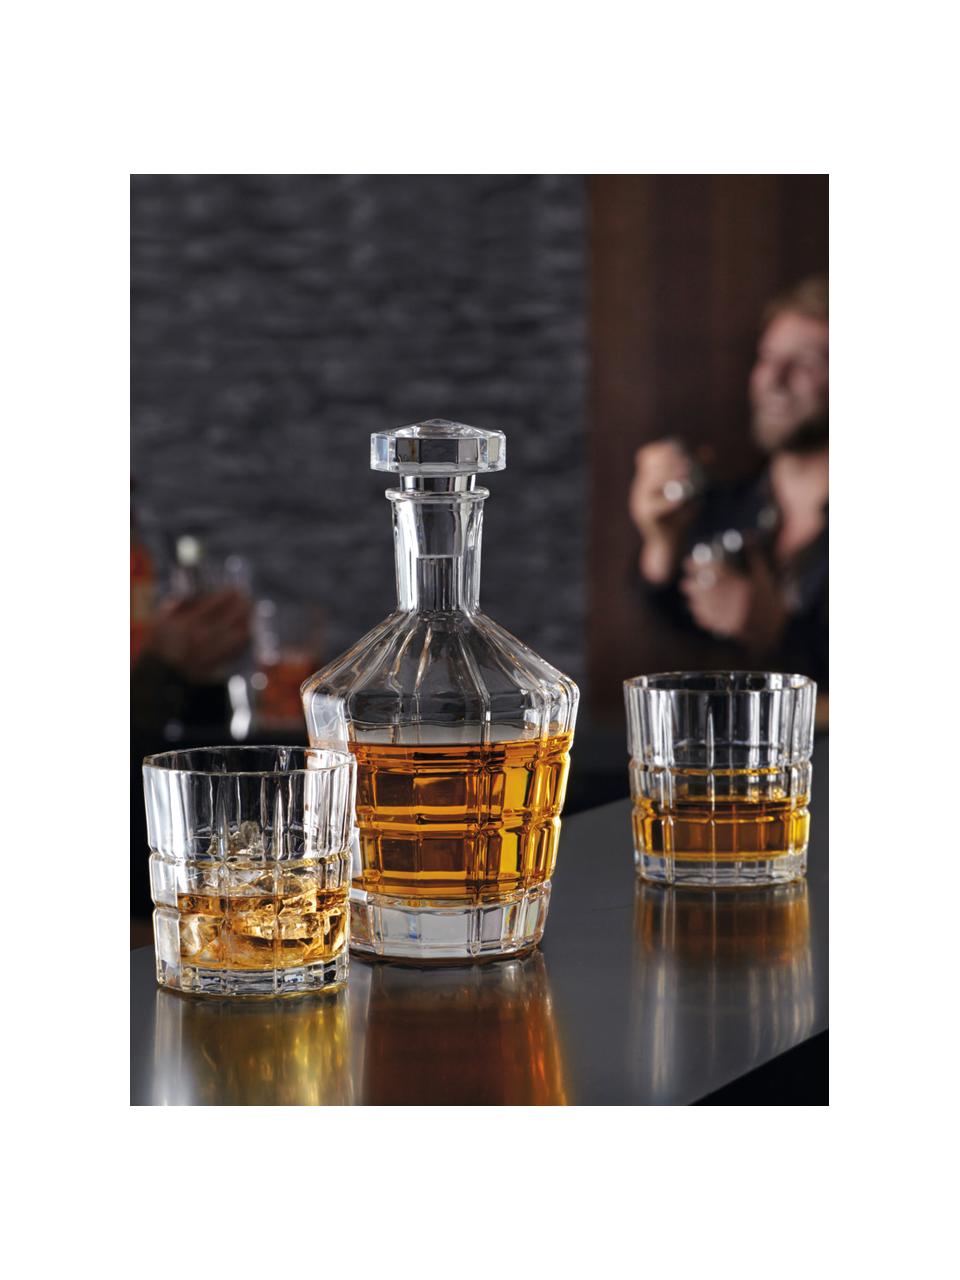 Whisky-Set Spiritii mit Relief, 3-tlg., Glas, Transparent, Set mit verschiedenen Größen